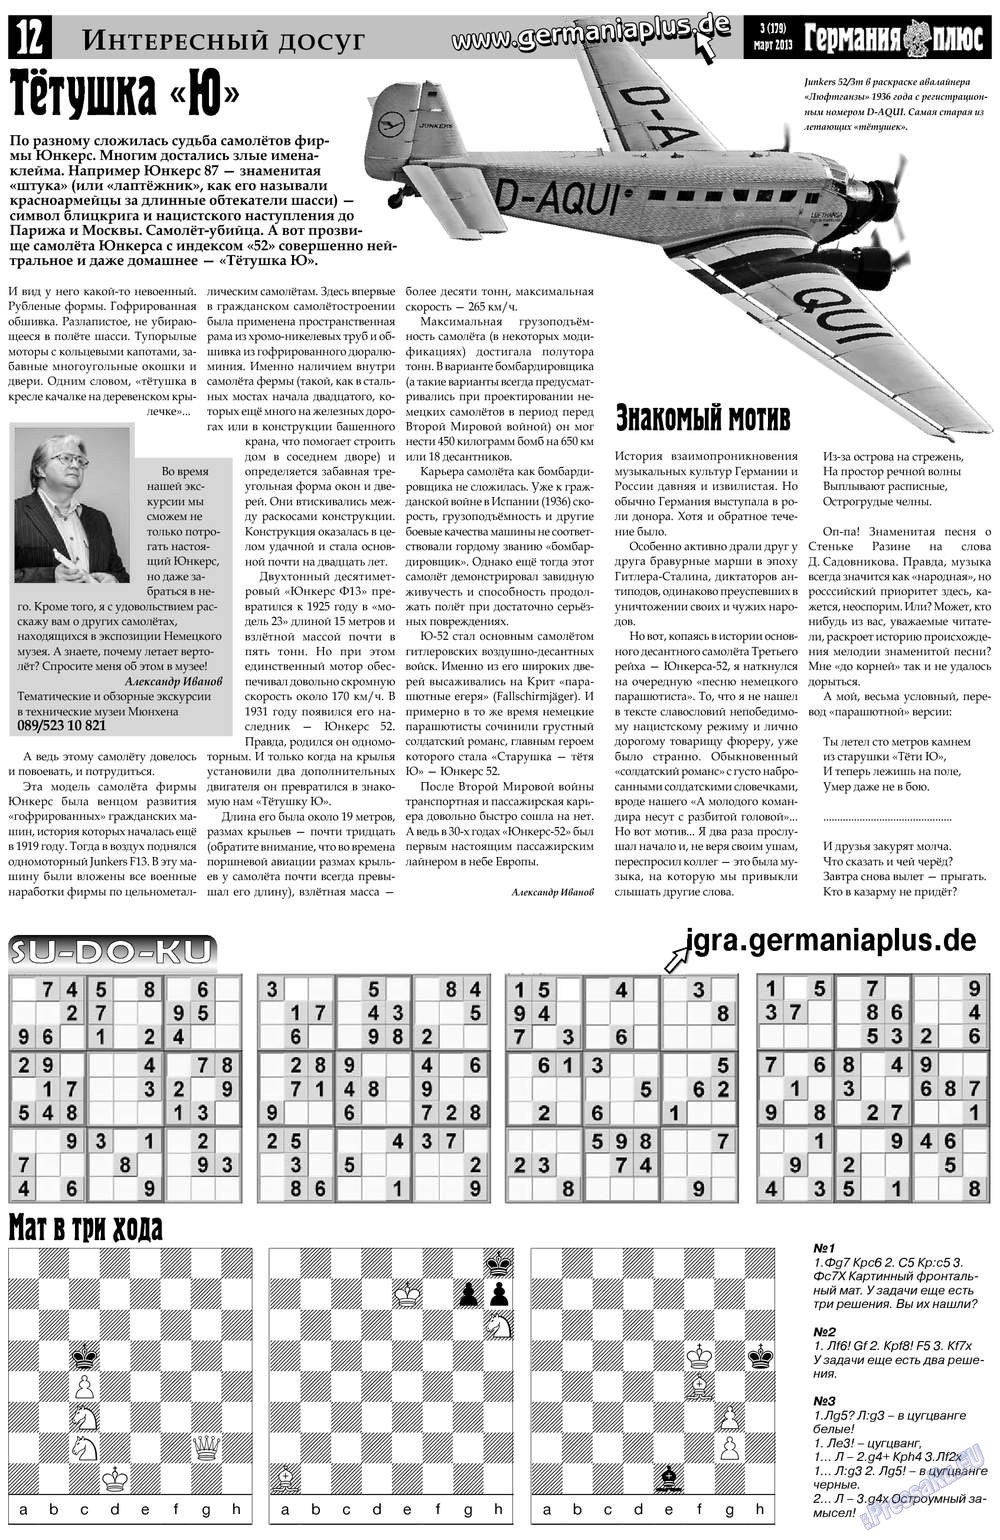 Германия плюс, газета. 2013 №3 стр.12